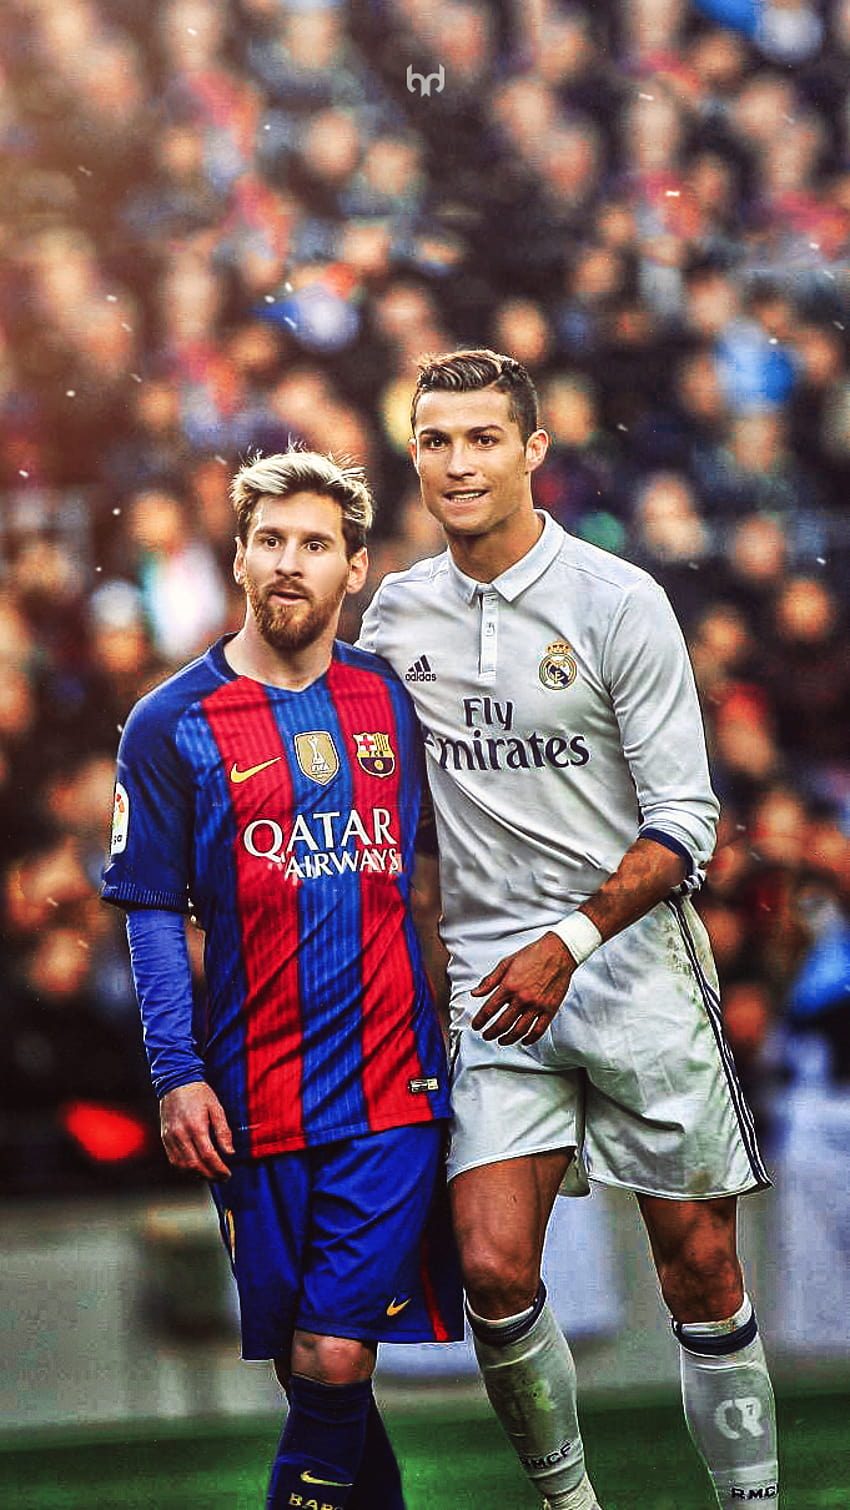 Sự kết hợp tuyệt vời giữa Ronaldo và Messi sẽ chắc chắn làm tan chảy trái tim của tất cả các cổ động viên bóng đá. Hình nền Ronaldo và Messi sẽ đánh dấu một thời điểm lịch sử và để lại những kỷ niệm khó quên.